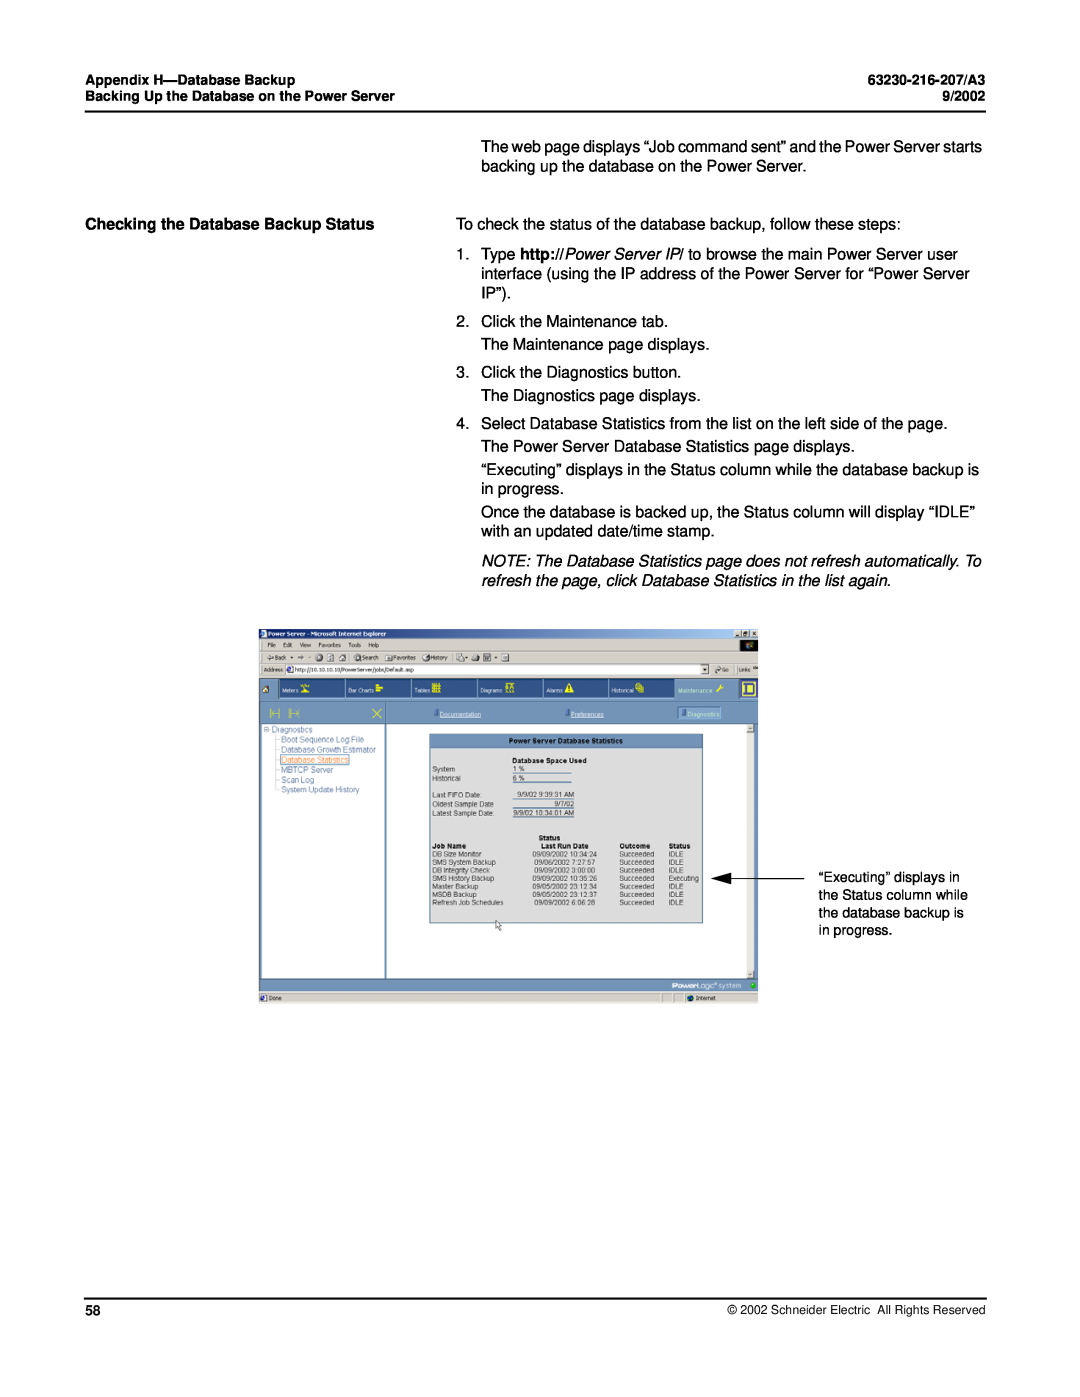 Schneider Electric PWRSRV710, PWRSRV750 setup guide Checking the Database Backup Status 